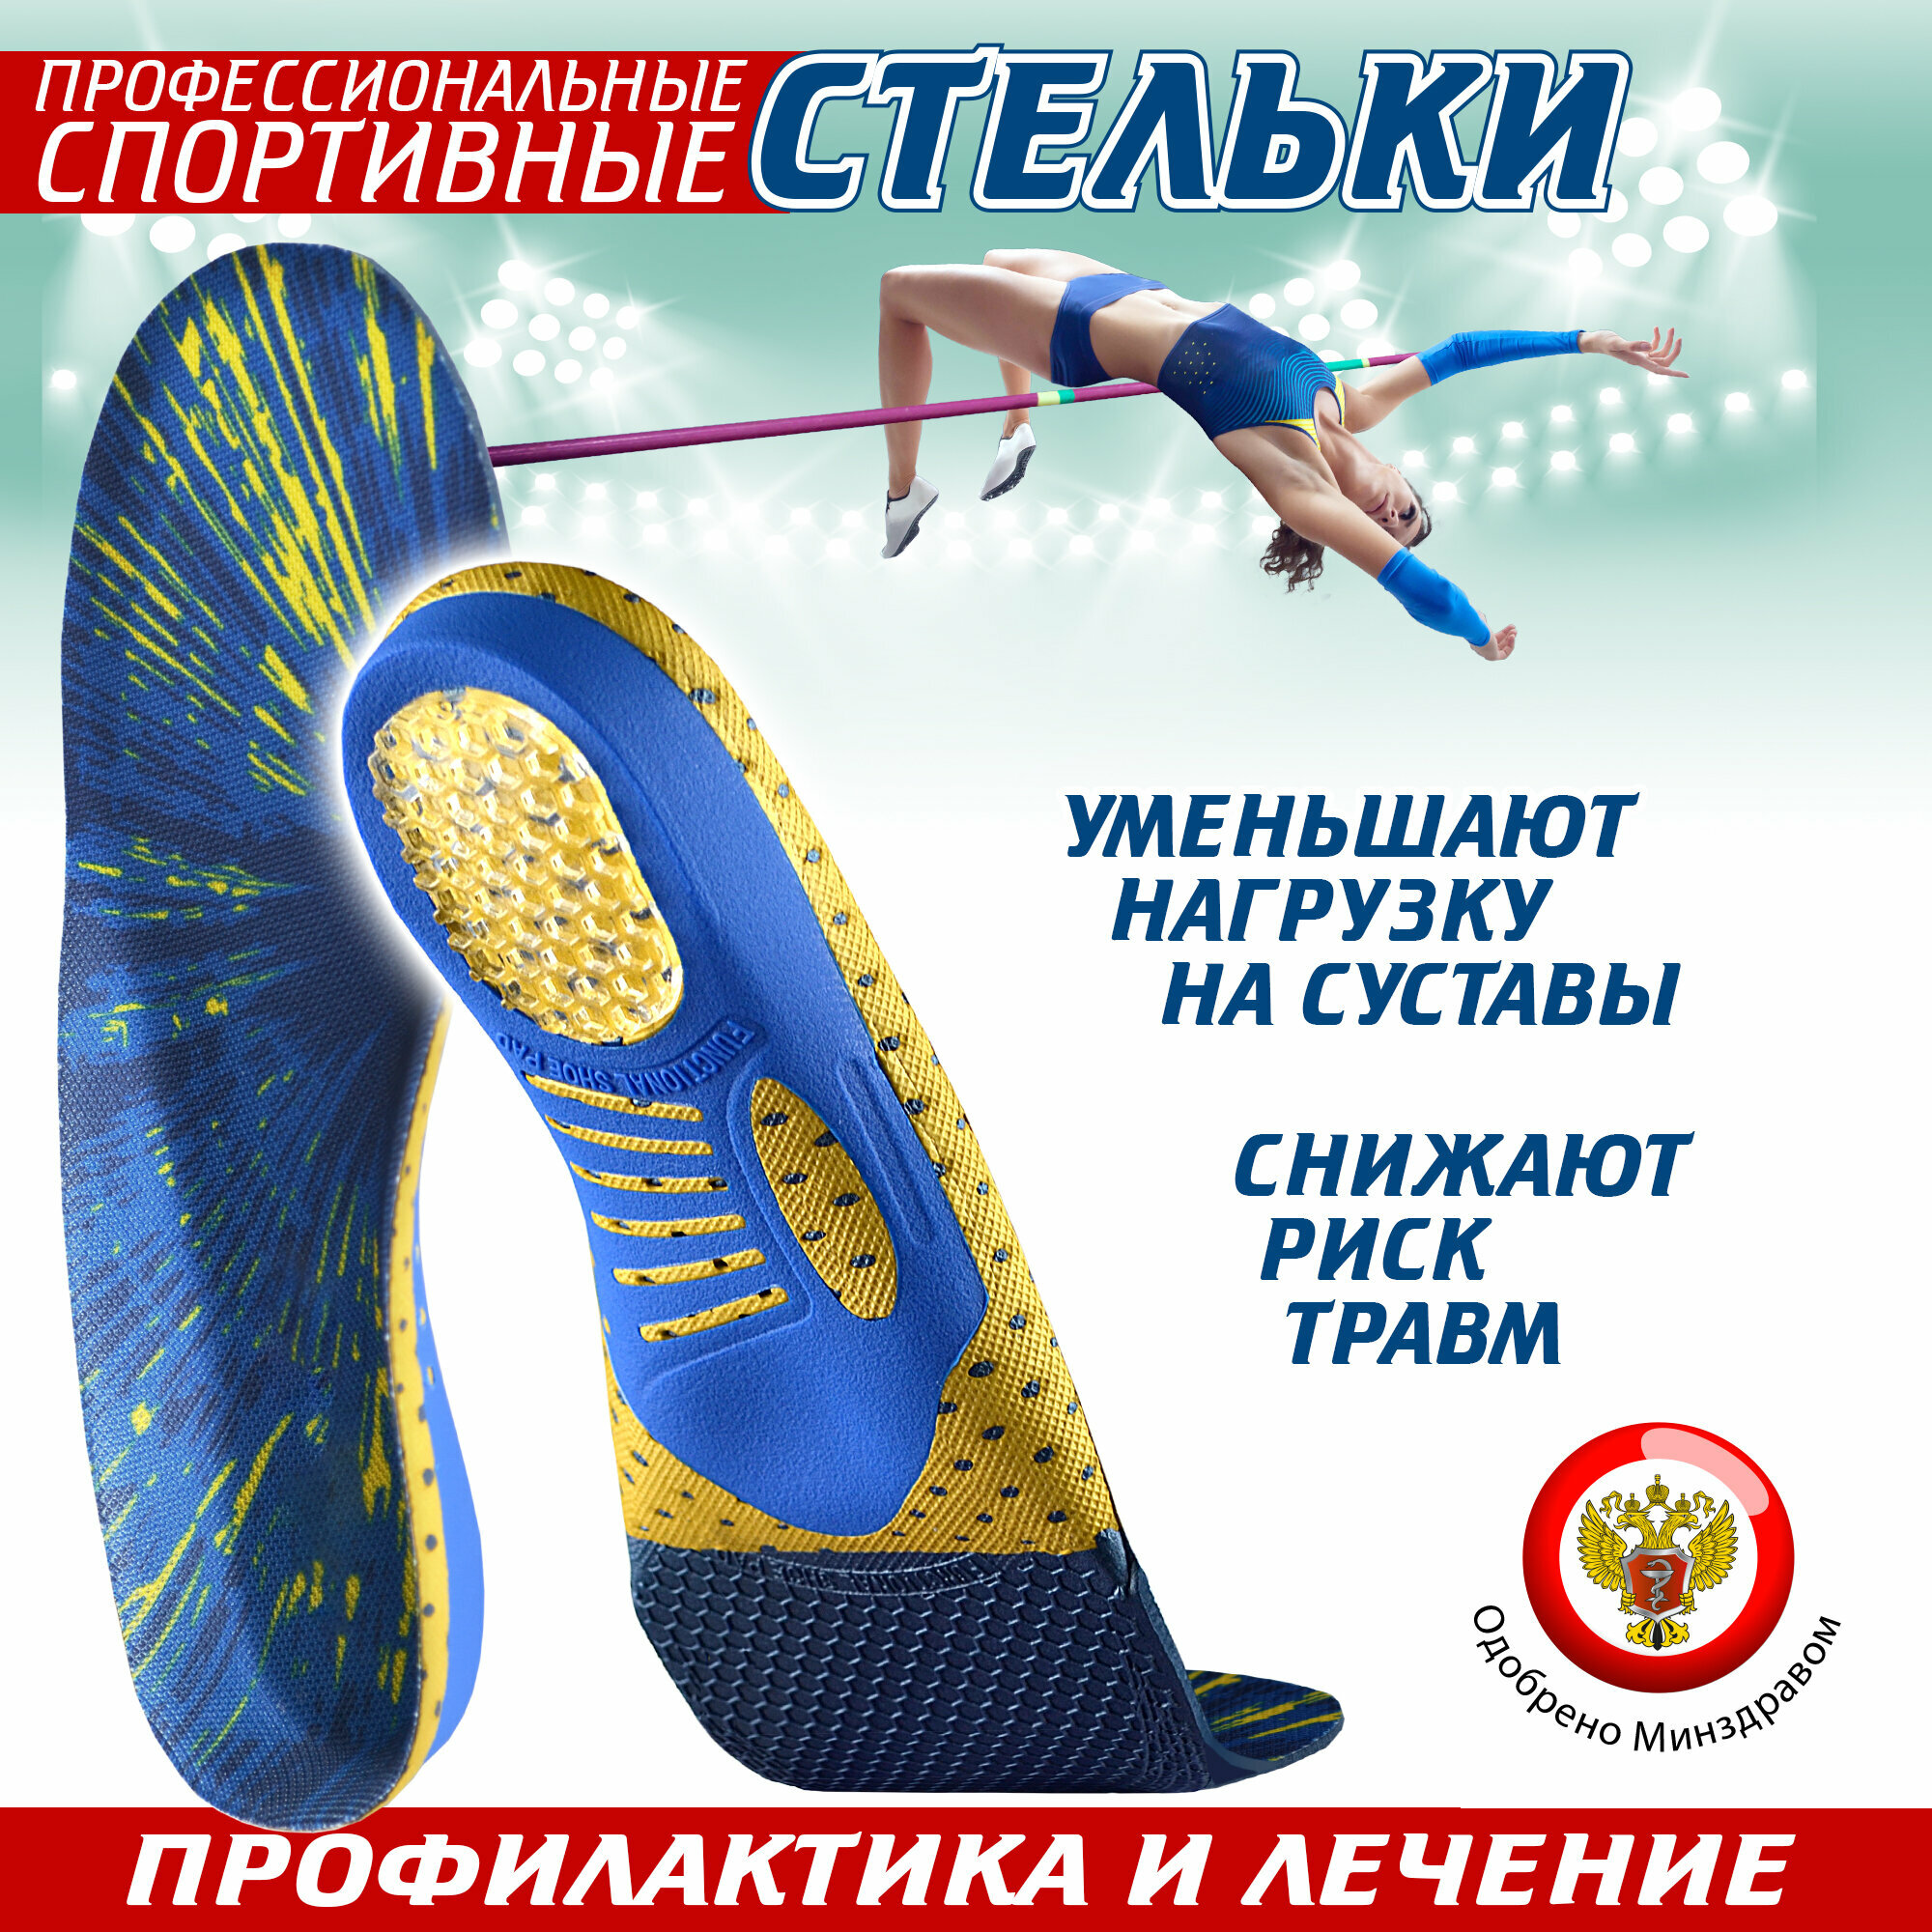 Ортопедические стельки спортивные Sport, для обуви, каркасные, 42